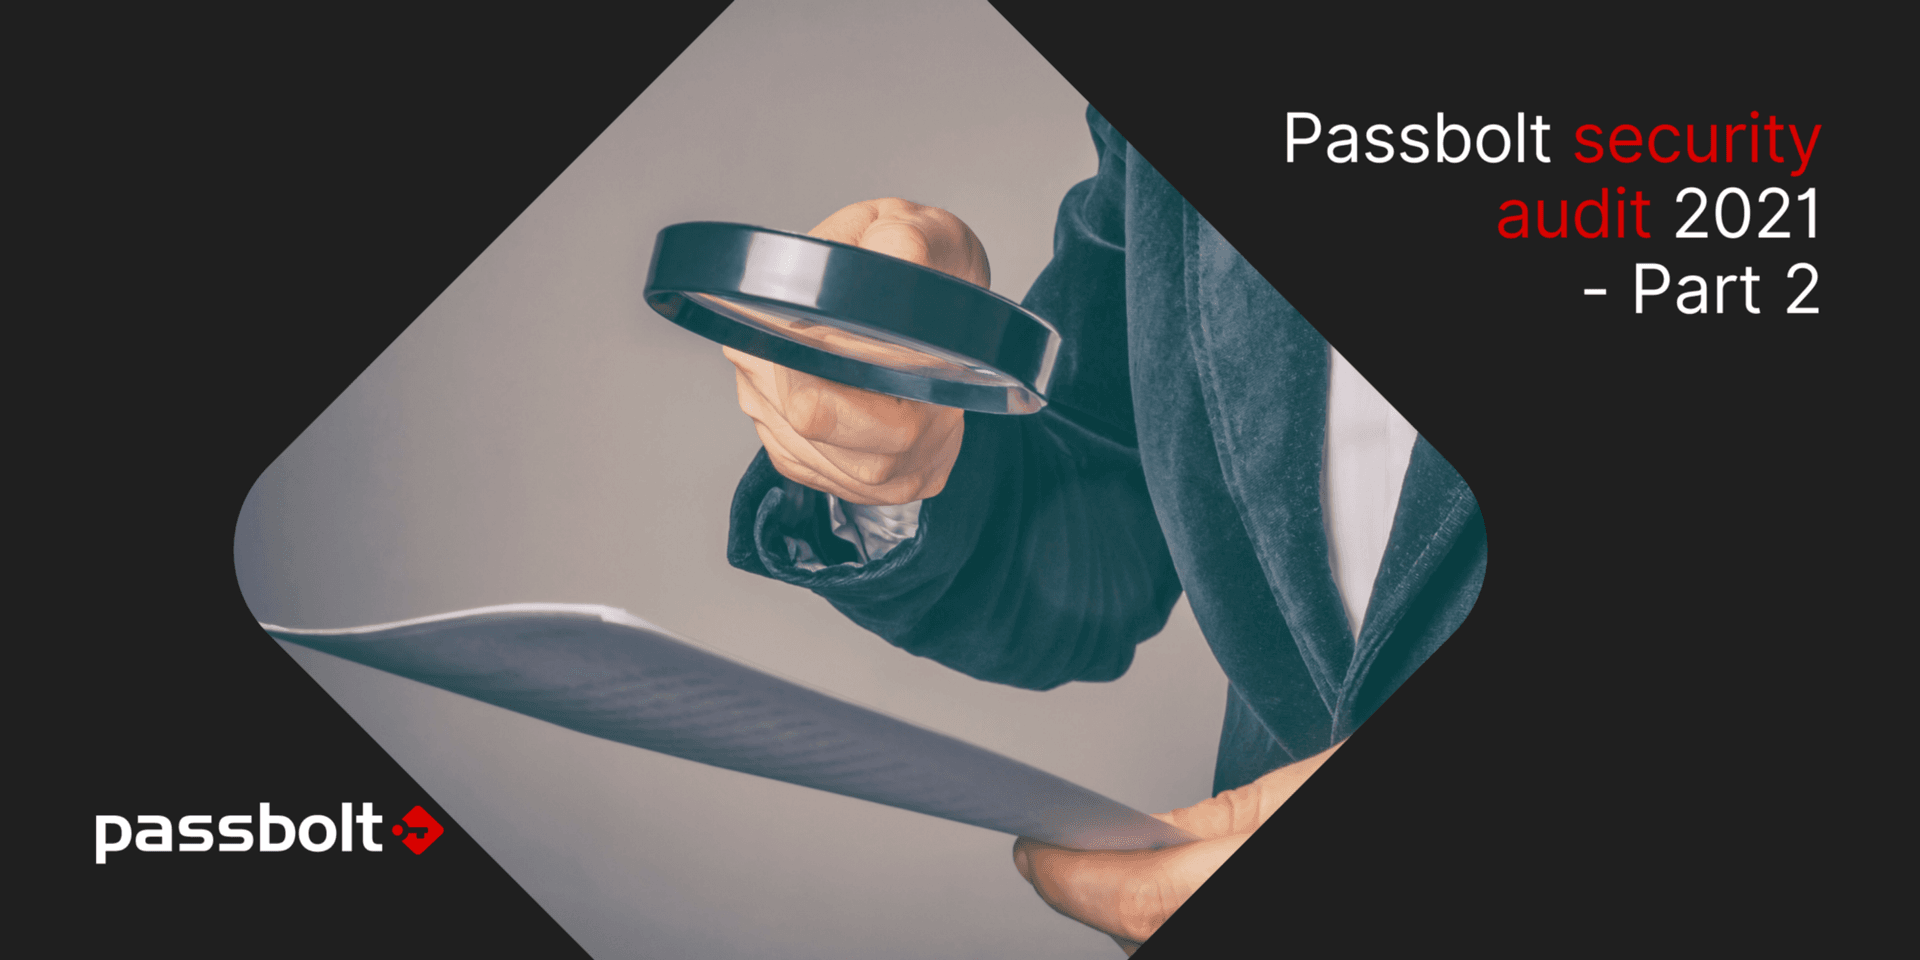 Passbolt security audit 2021 - Part 2